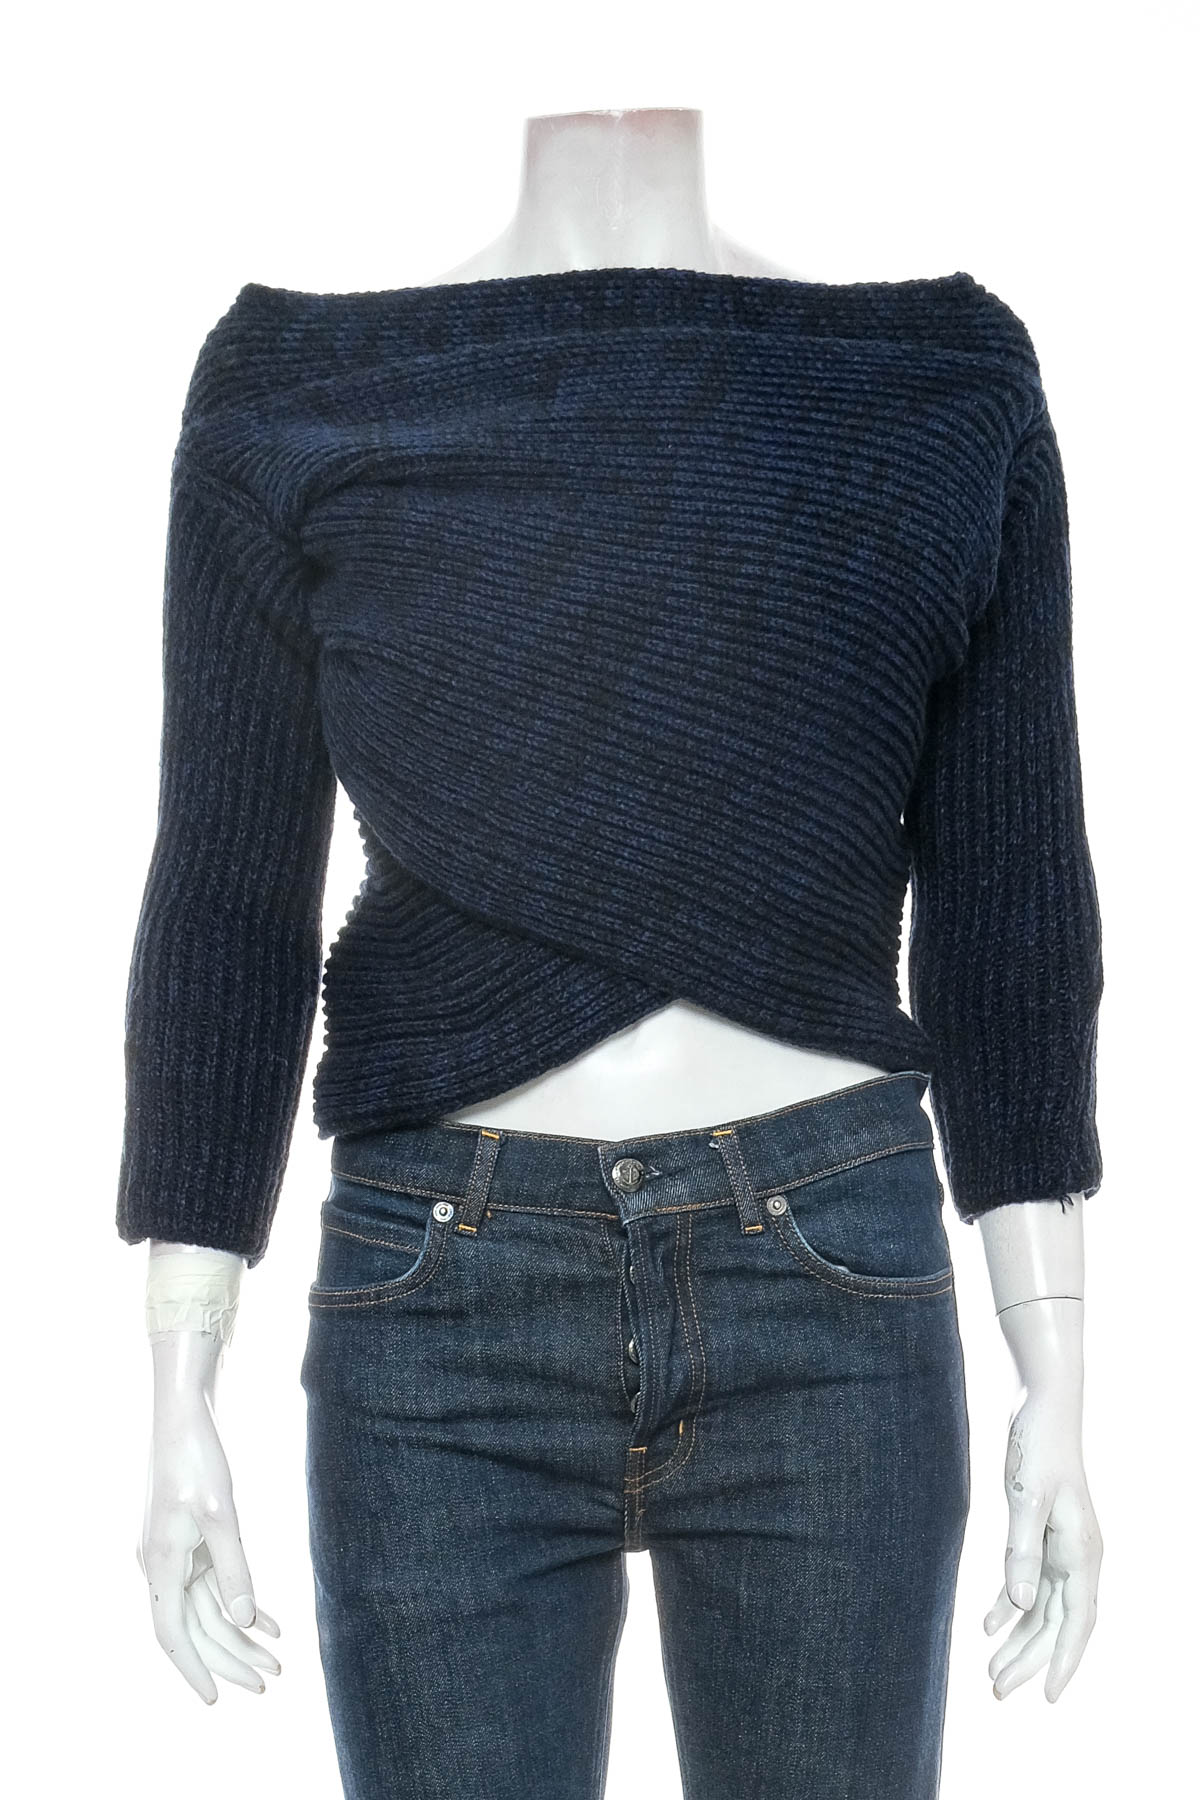 Women's sweater - Earl Grey - 0